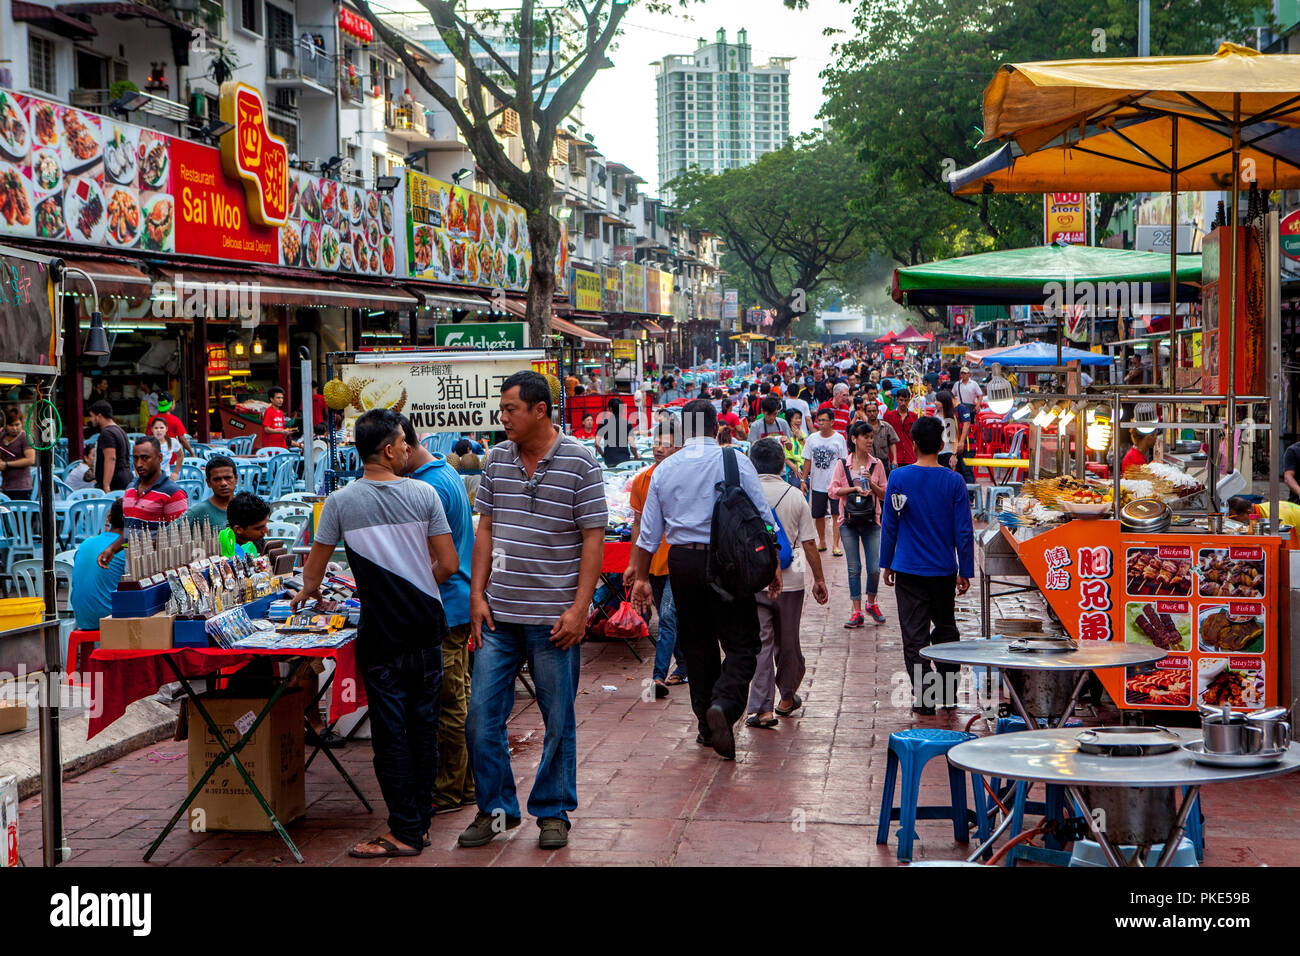 Gli amanti dello shopping, diners e turisti acquistare cibo e negozio di souvenir in Jalan Alor, Food Street, in Bukit Bintang, Kuala Lumpur, Malesia. Foto Stock